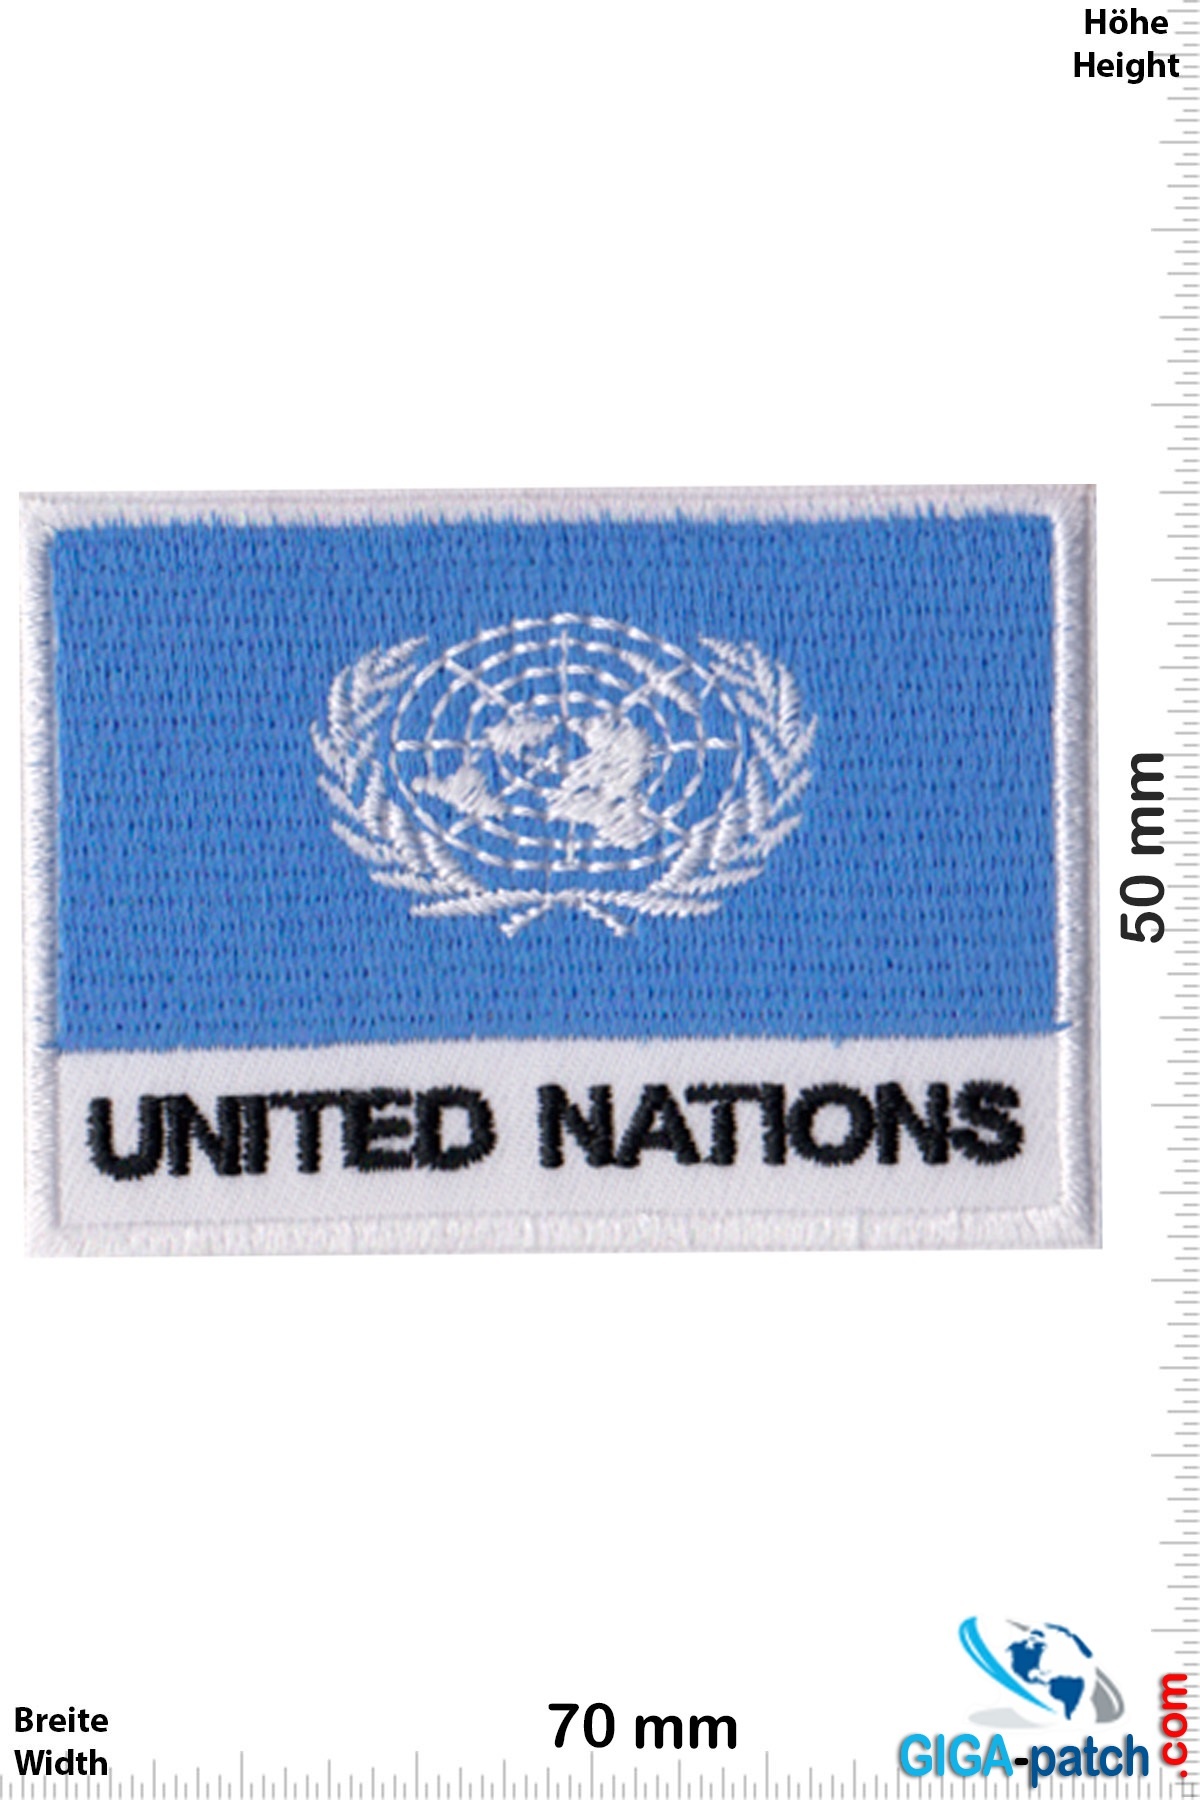 United Nations, United Nations Flagge -United Nations - Flag